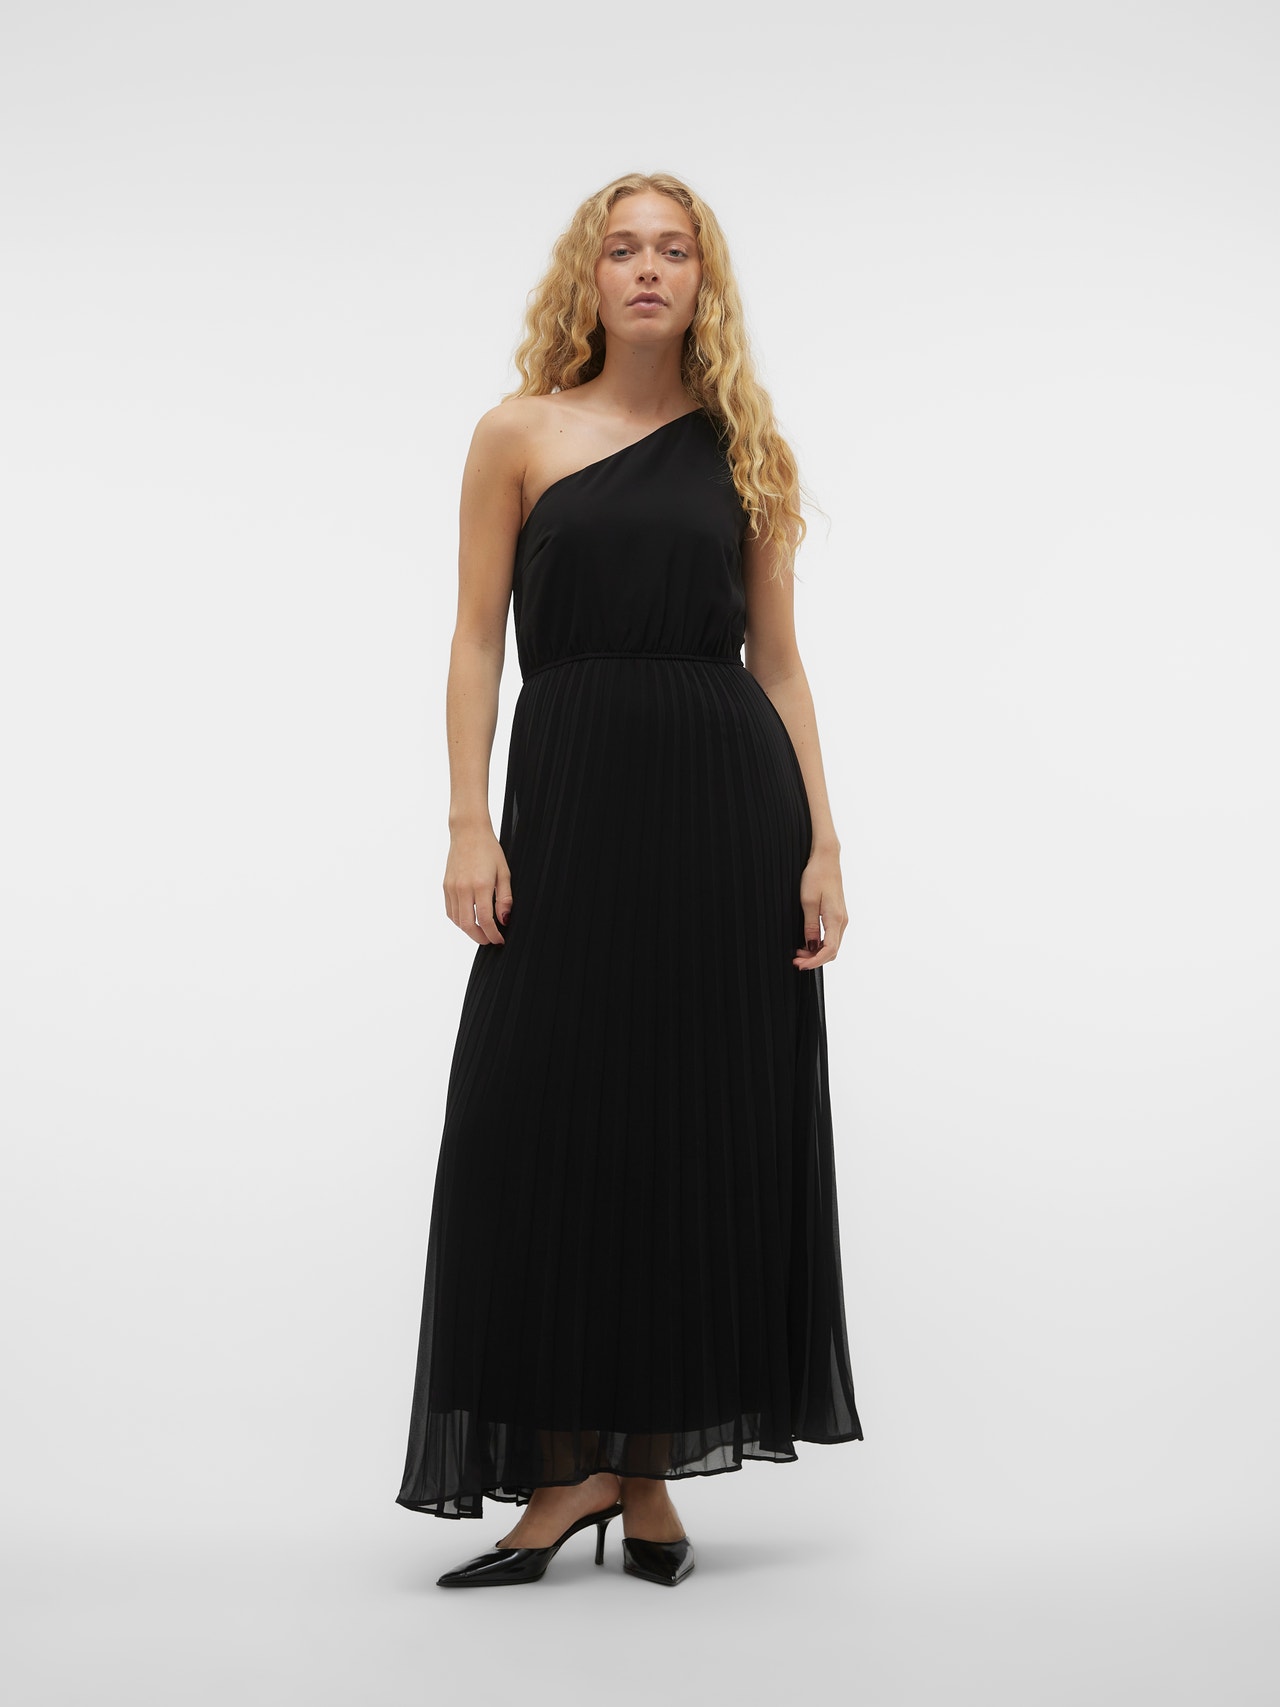 Vero Moda VMHOLLY Long dress -Black - 10314314